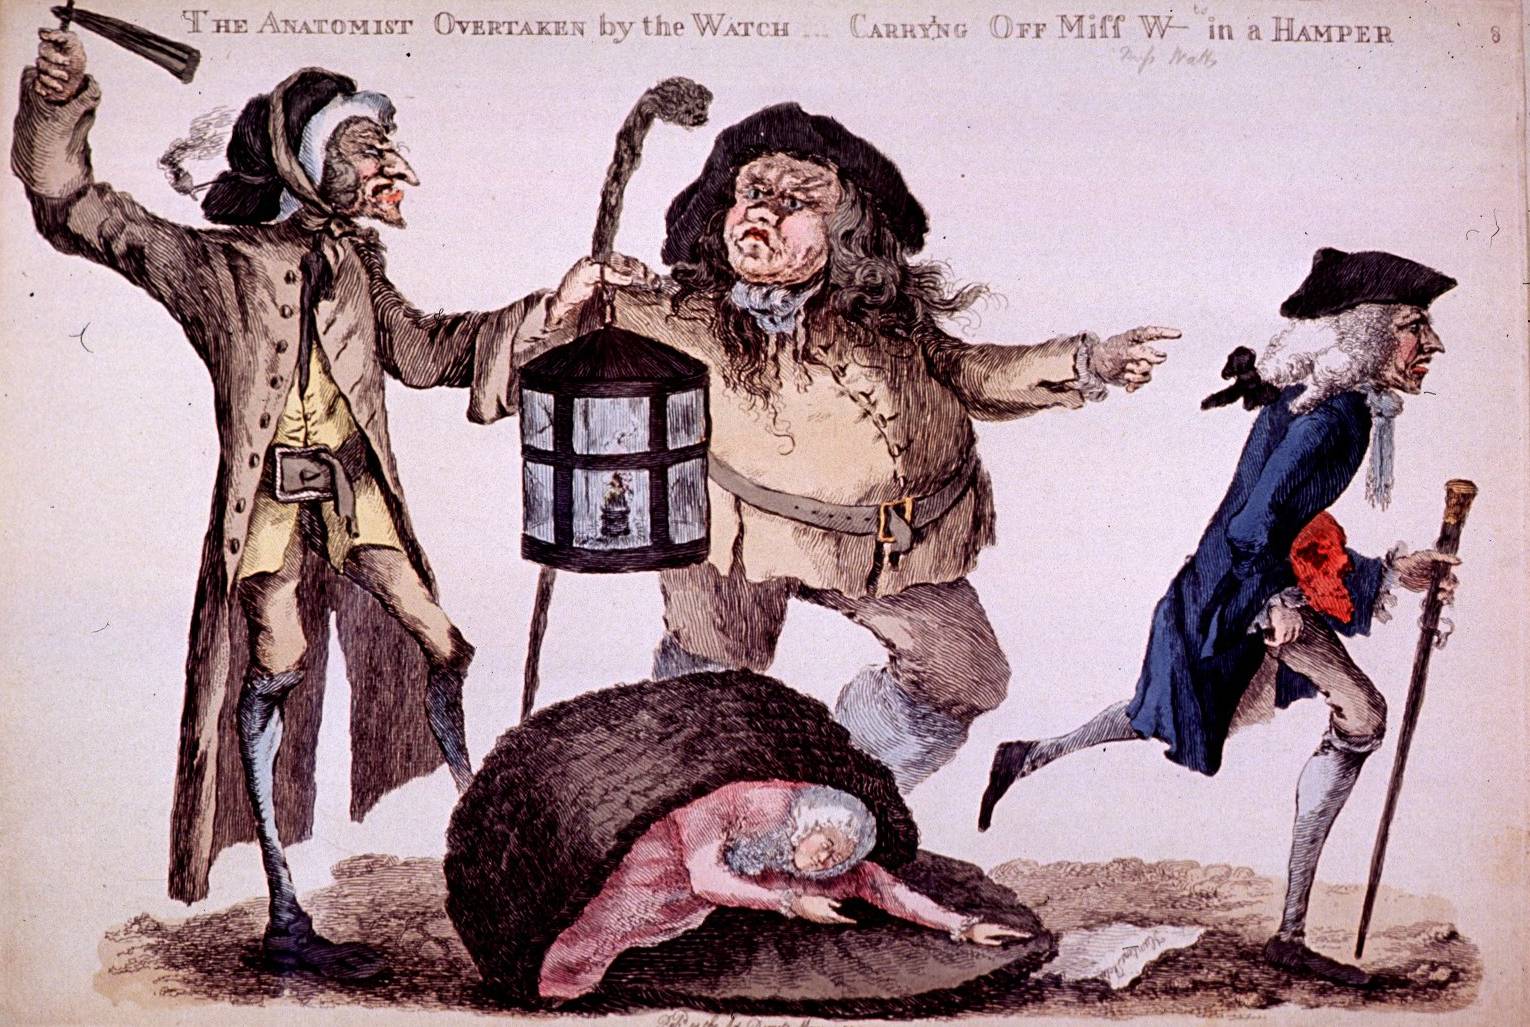 L'anatomiste surpris par les gardiens, illustration de William Austin, 1773 - source : WikiCommons